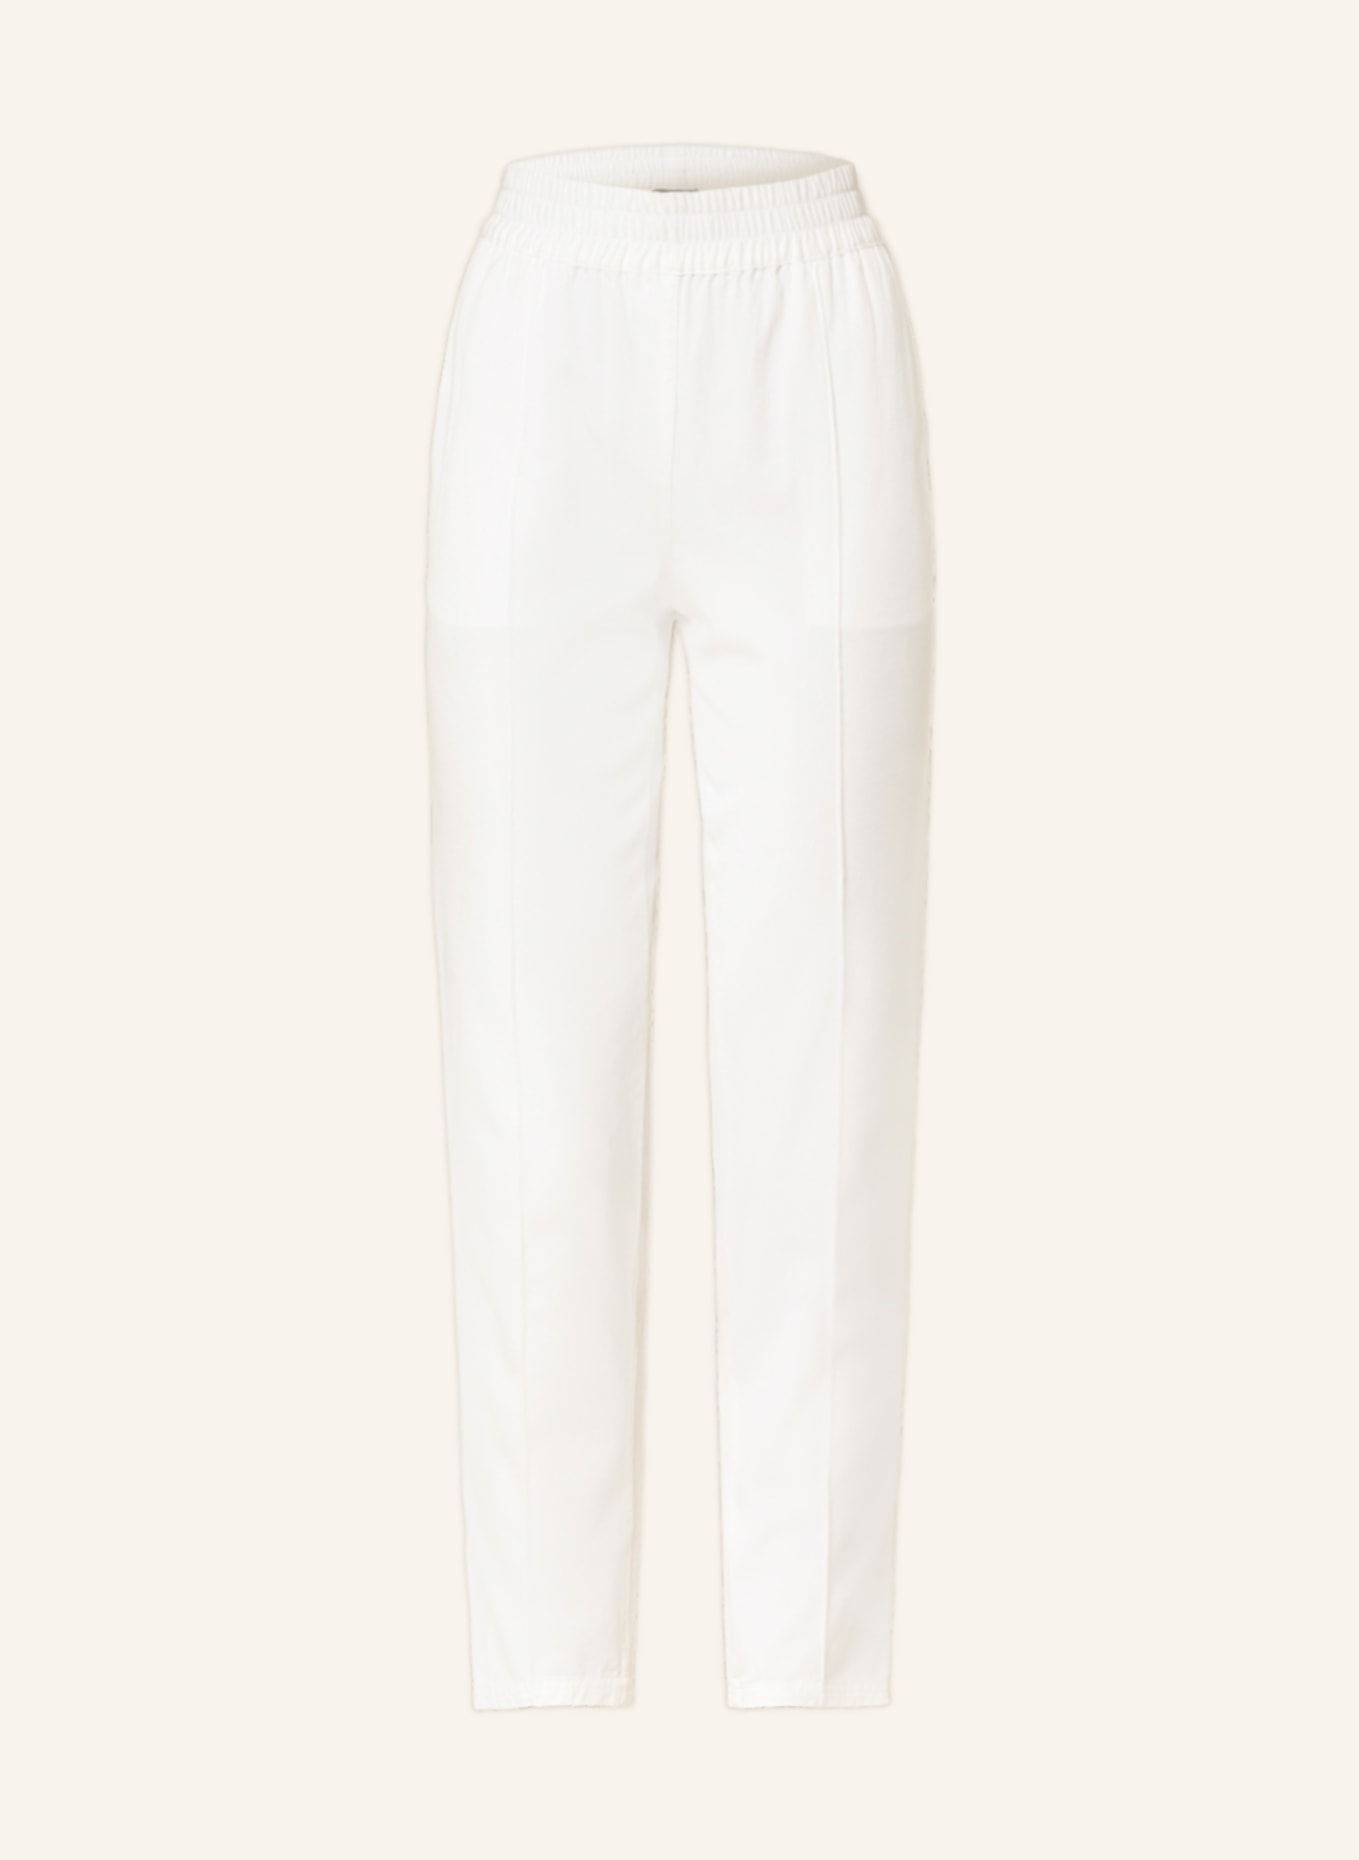 CATNOIR Pants, Color: WHITE (Image 1)